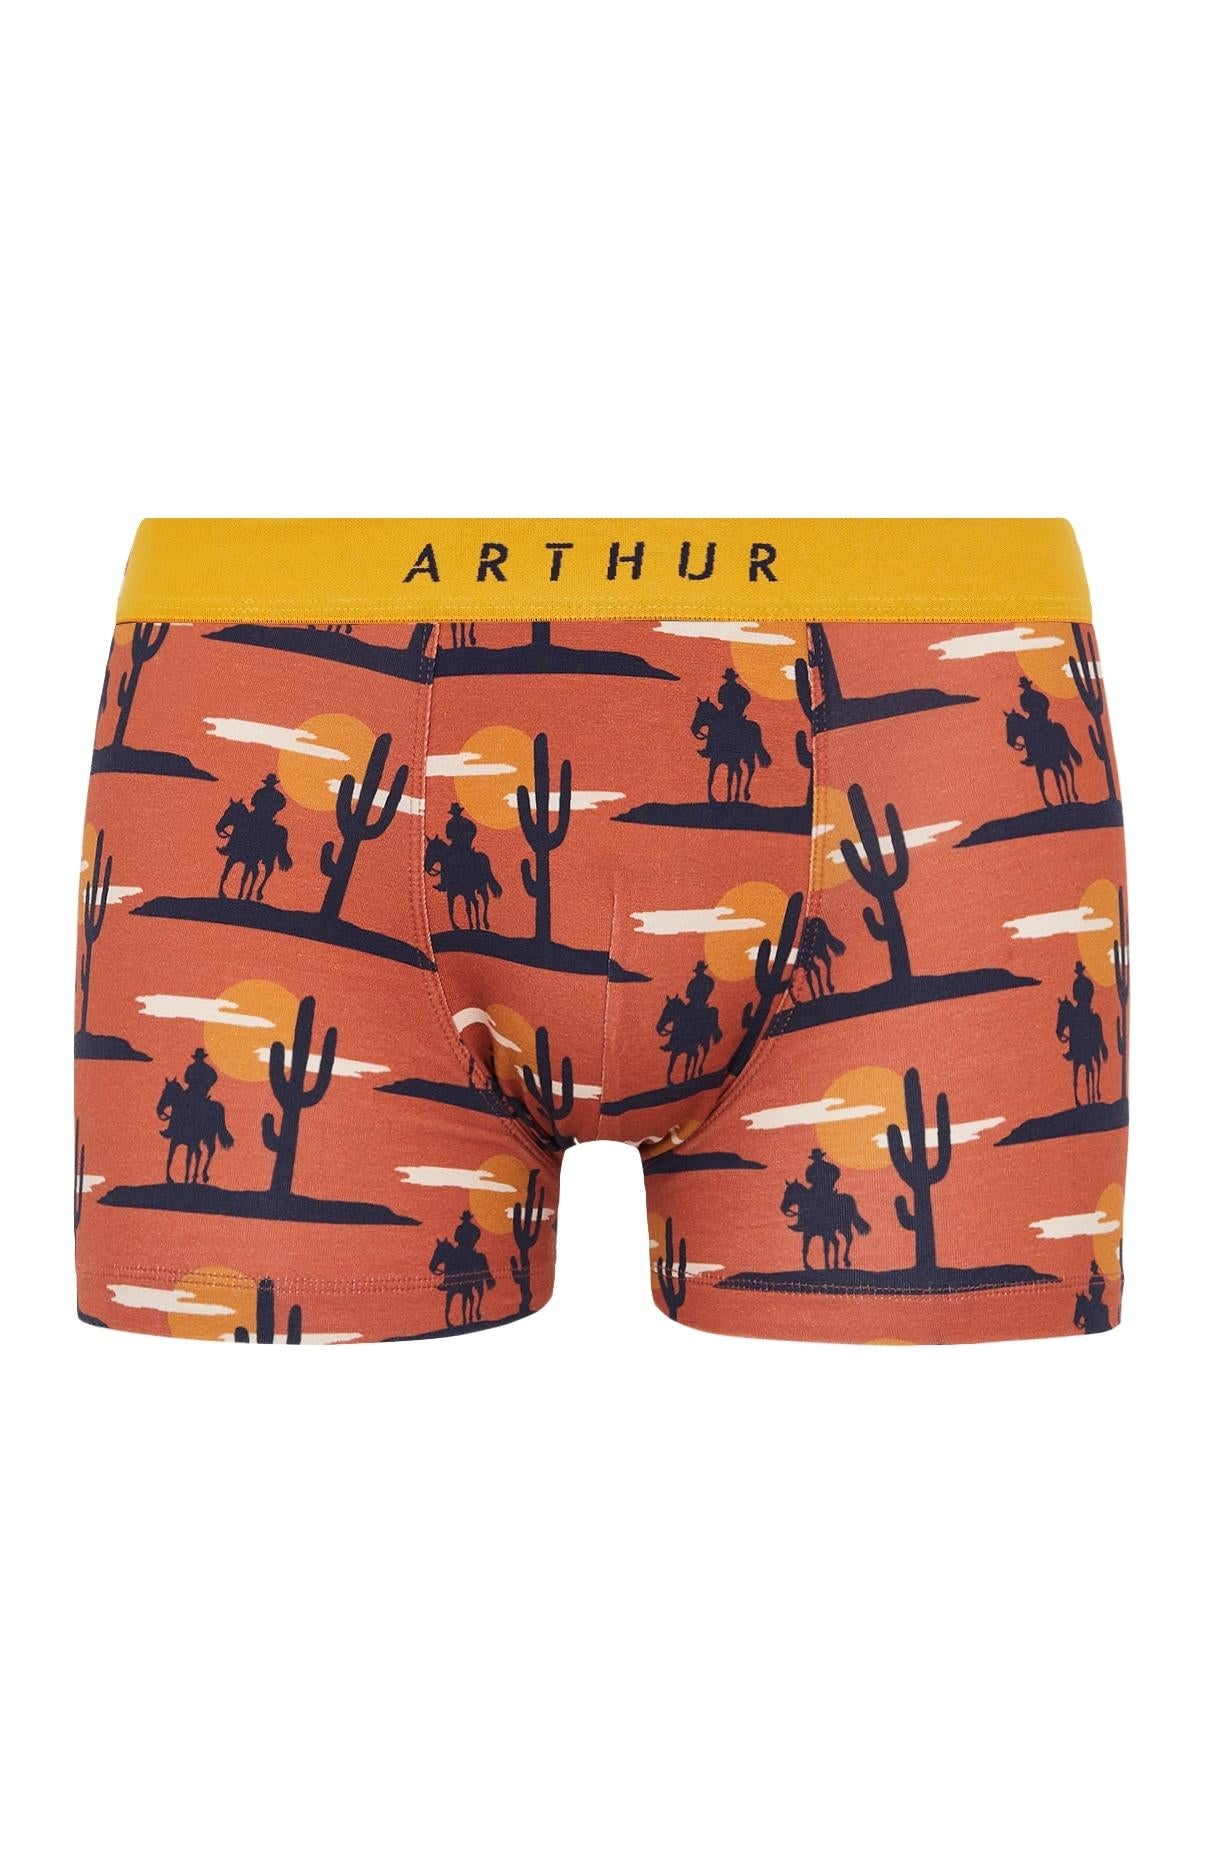 Chaussettes de tennis Coq  Sous-vêtements homme – Arthur